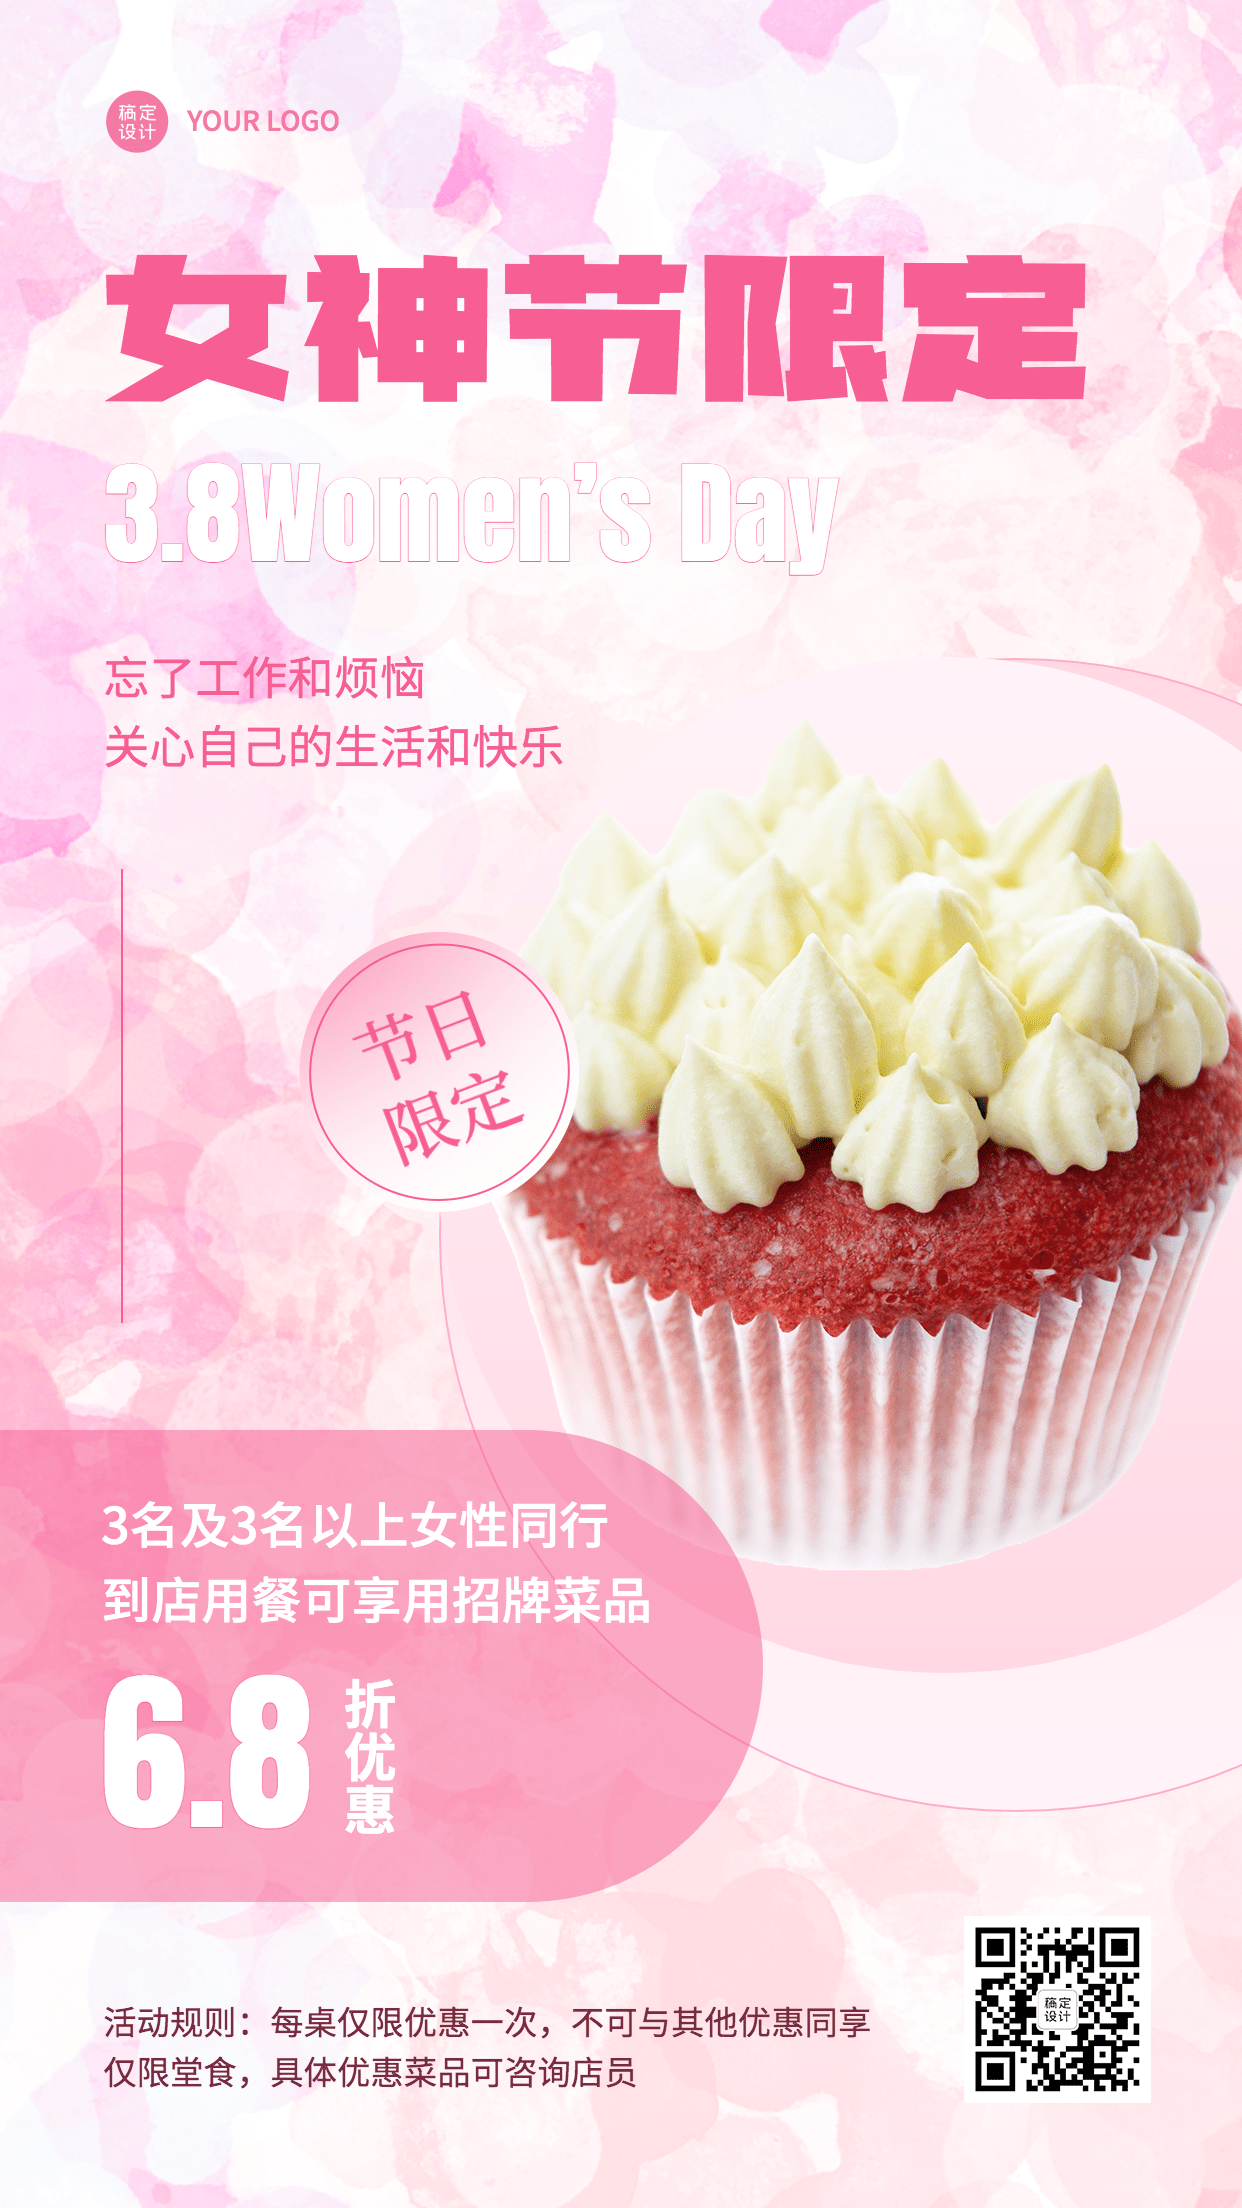 妇女节蛋糕烘焙甜品产品营销促销餐饮手机海报预览效果